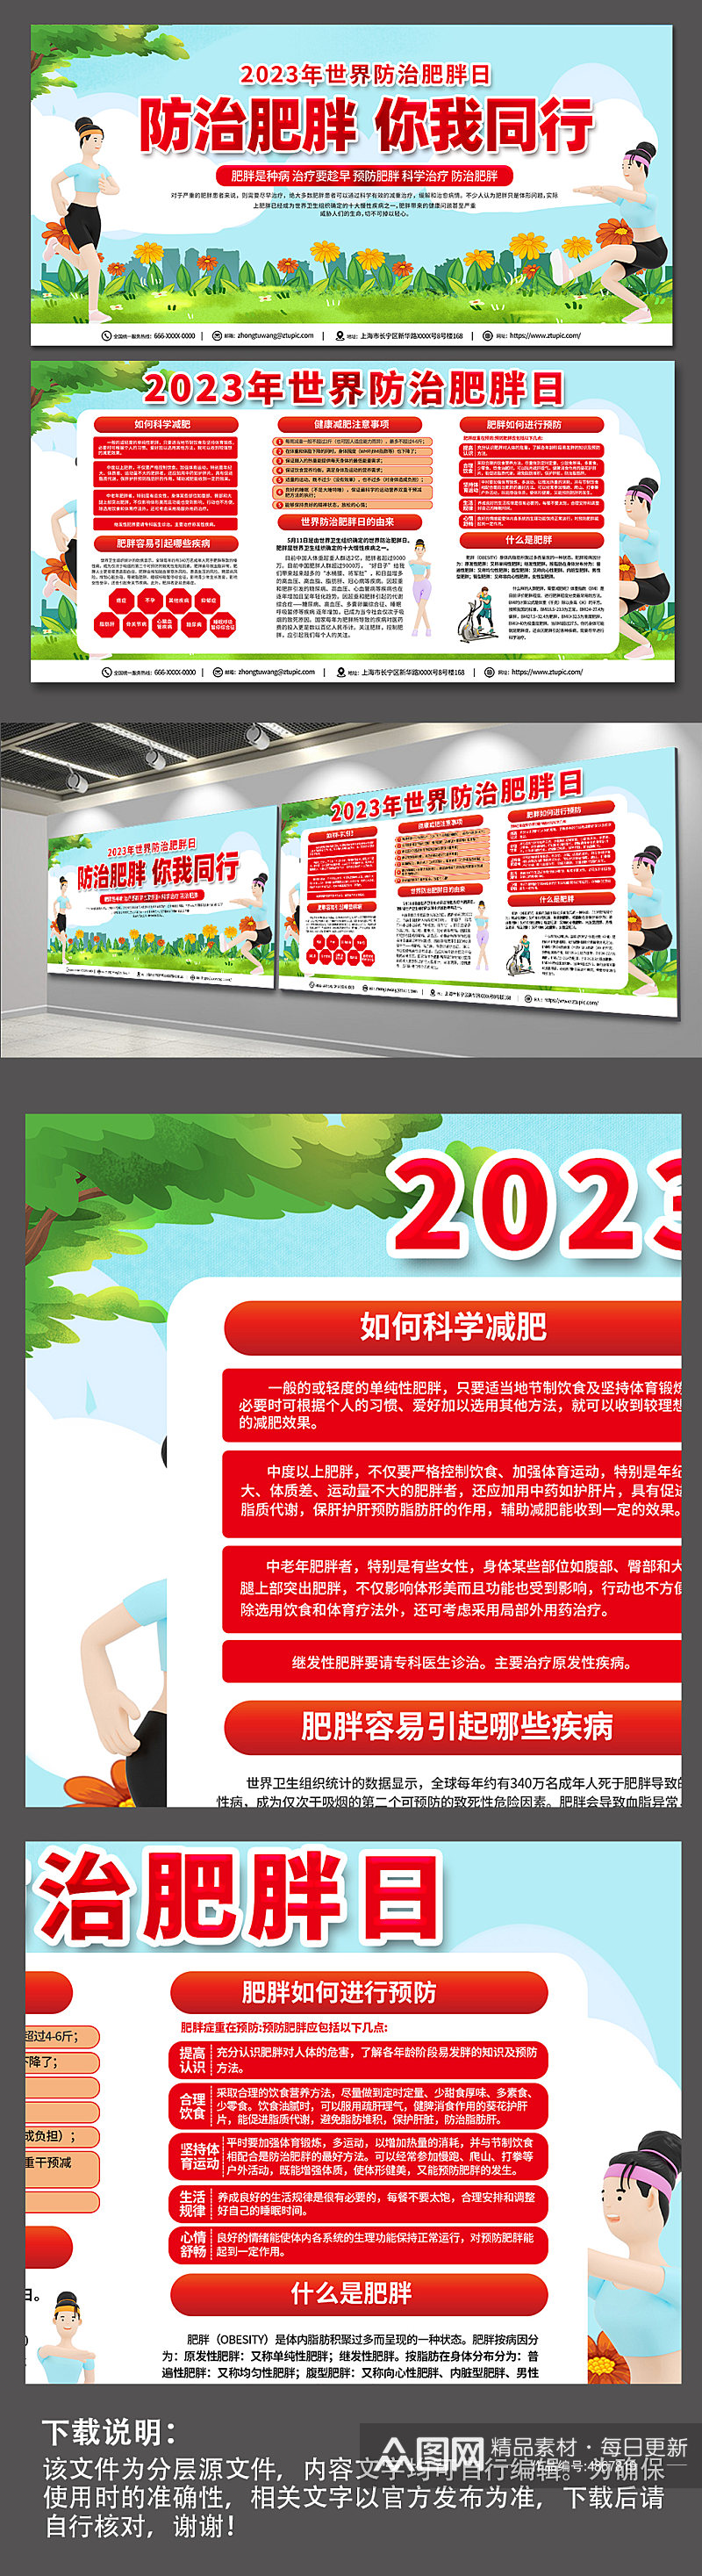 红色大气2023世界防治肥胖日宣传栏展板素材